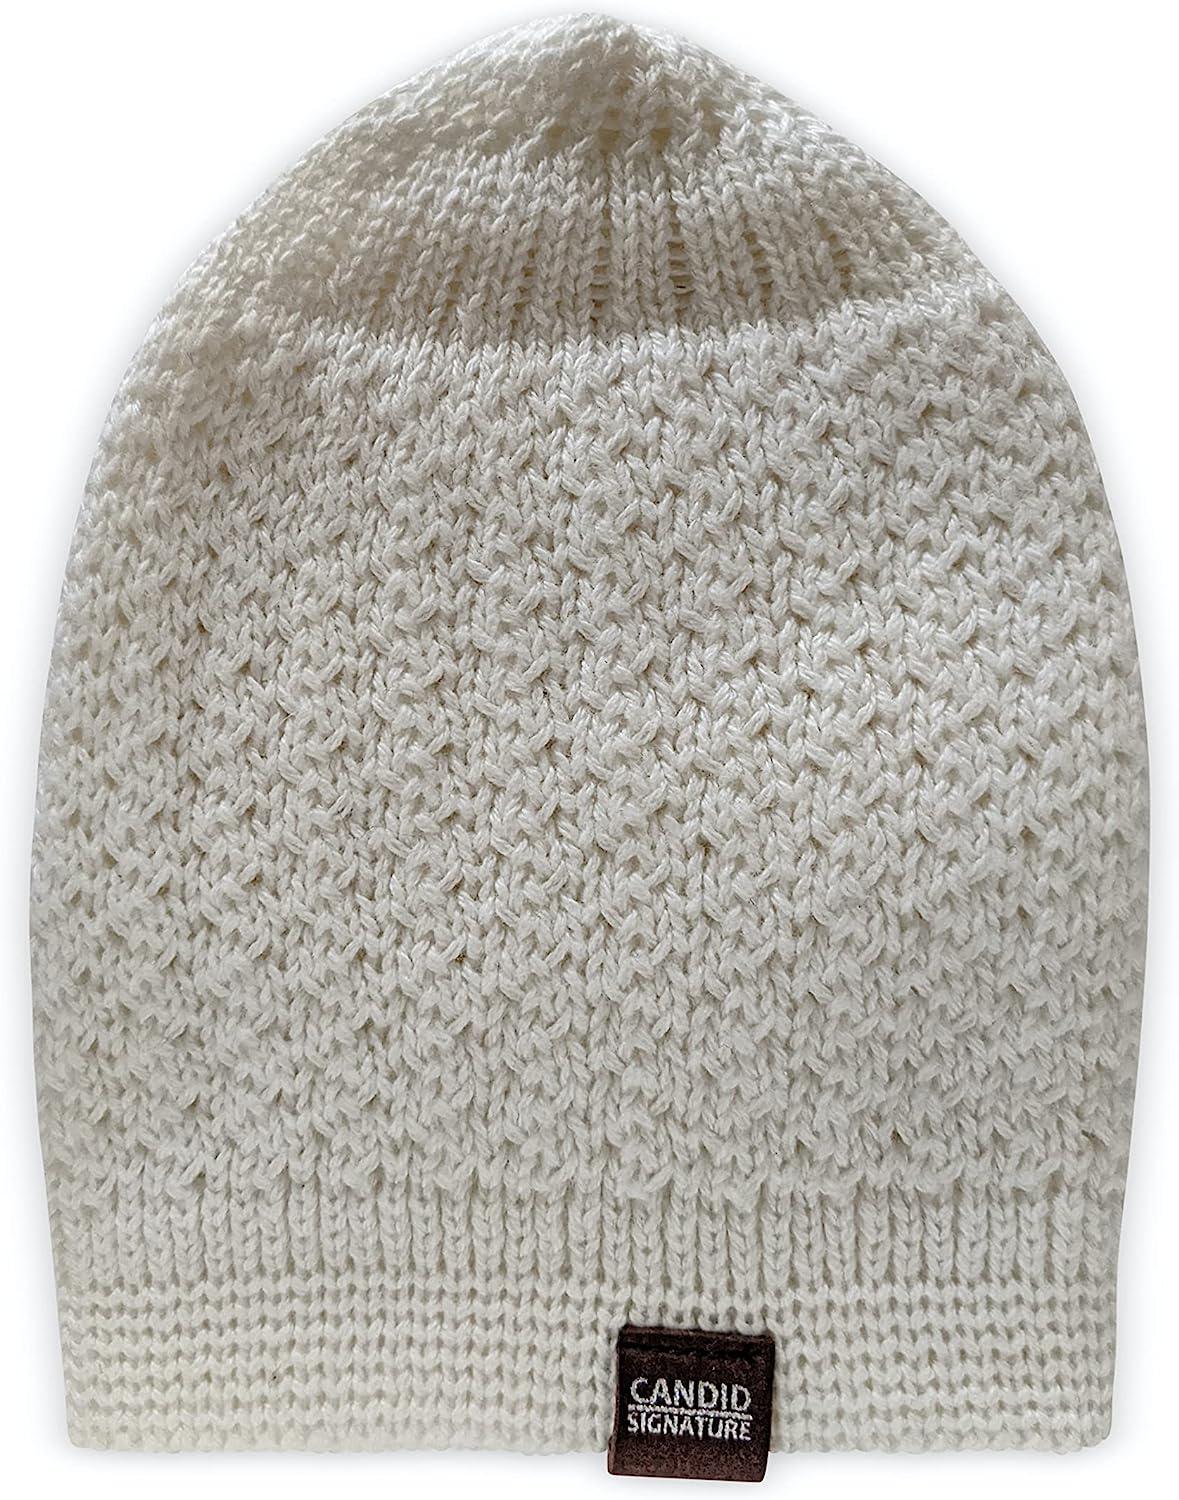 Original Sleeping Cotton Comfort Caps in Premium, Soft 100% Ring